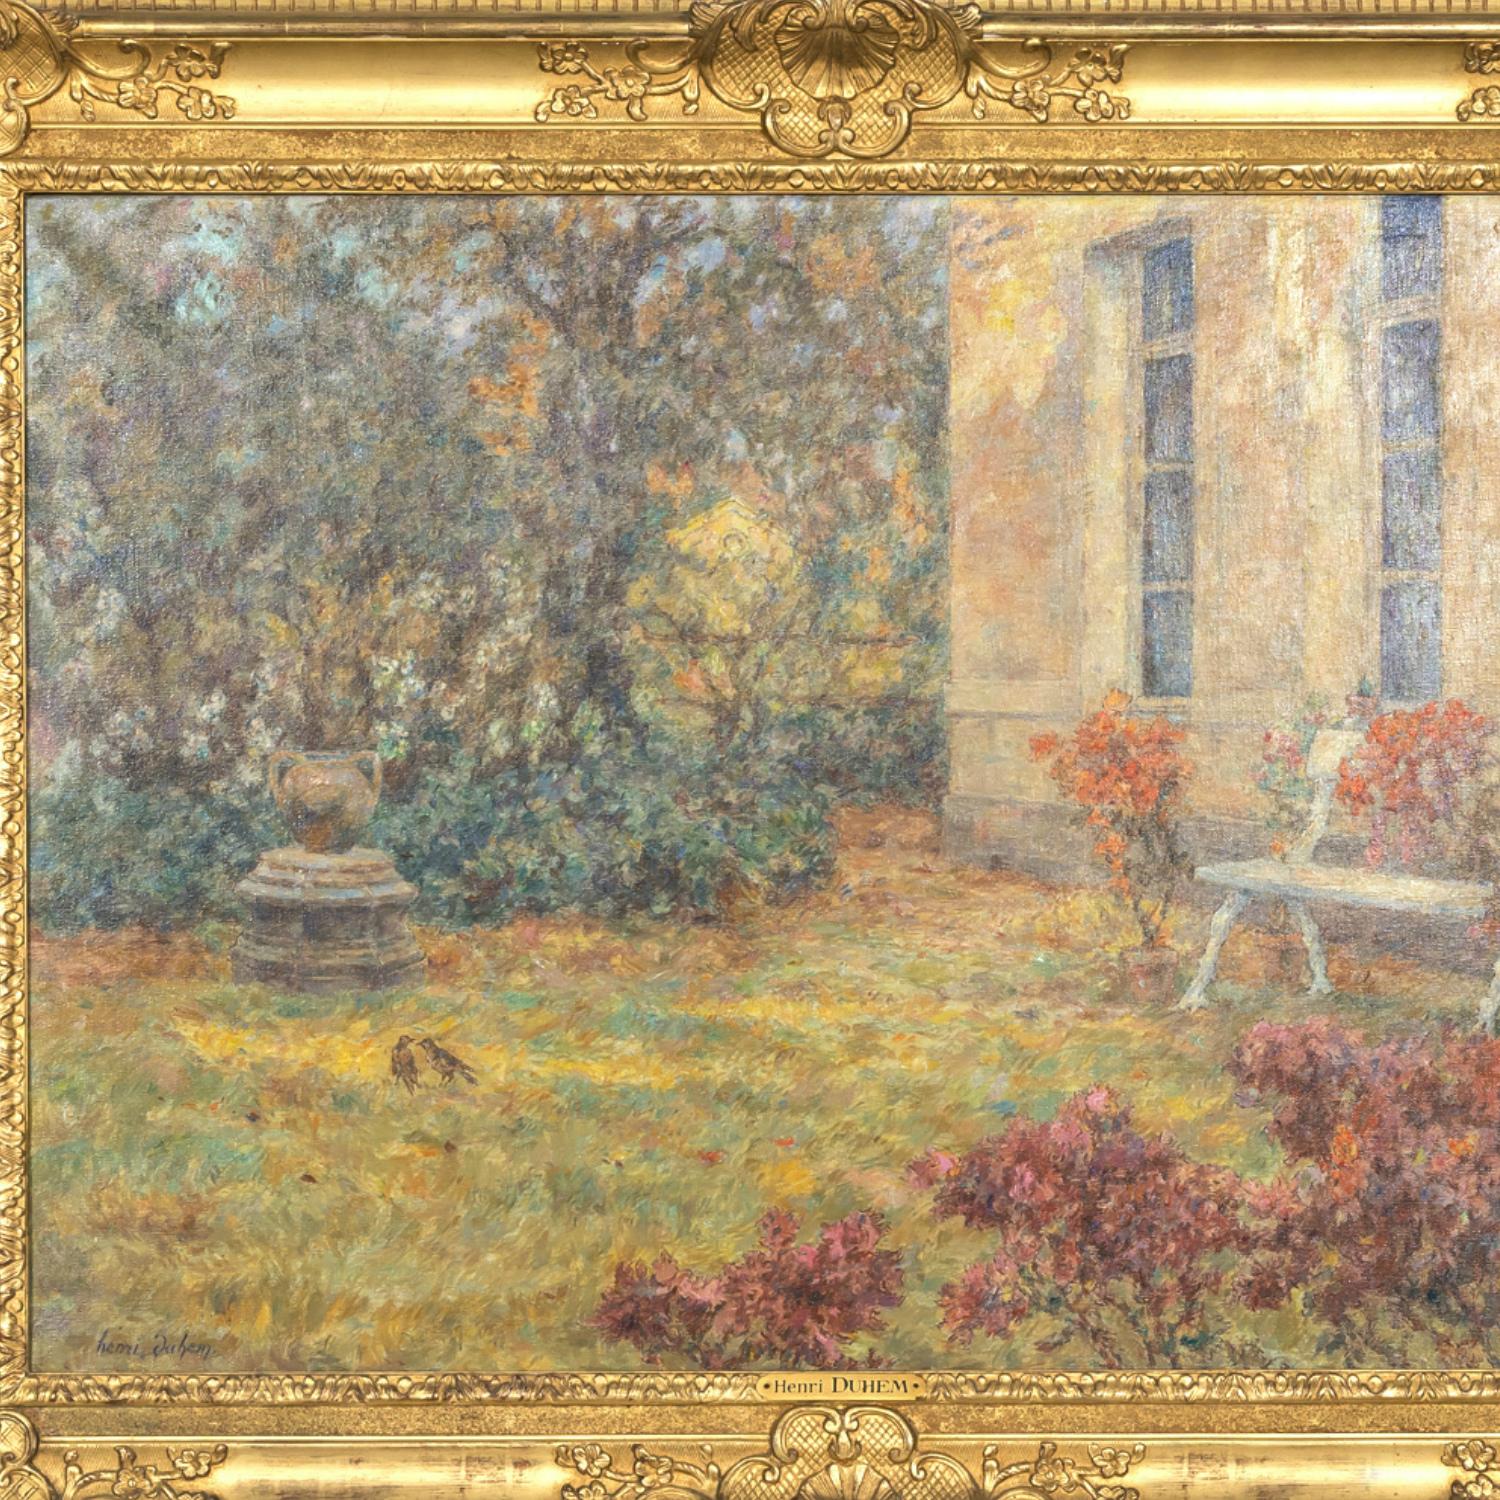 Canvas Large Framed French Impressionist Oil Garden Landscape by Henri Duhem, Signed